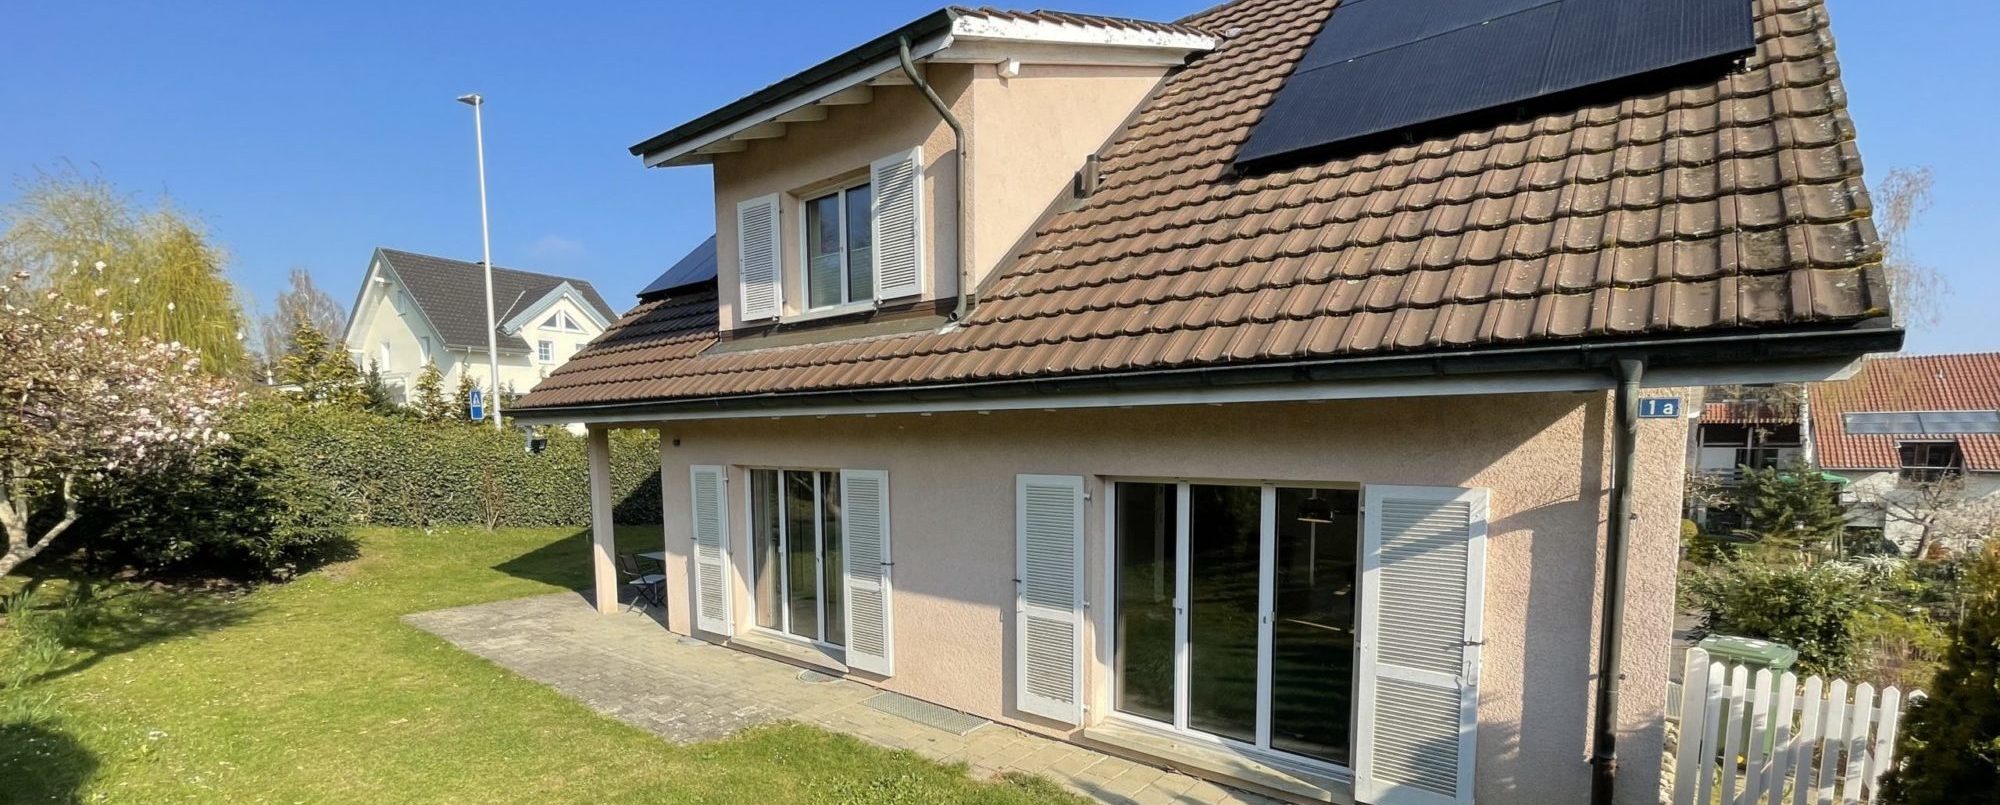 VERKAUFT – Hochwertig renoviertes 6 Zimmer Einfamilienhaus in bester Lage Kreuzlingens